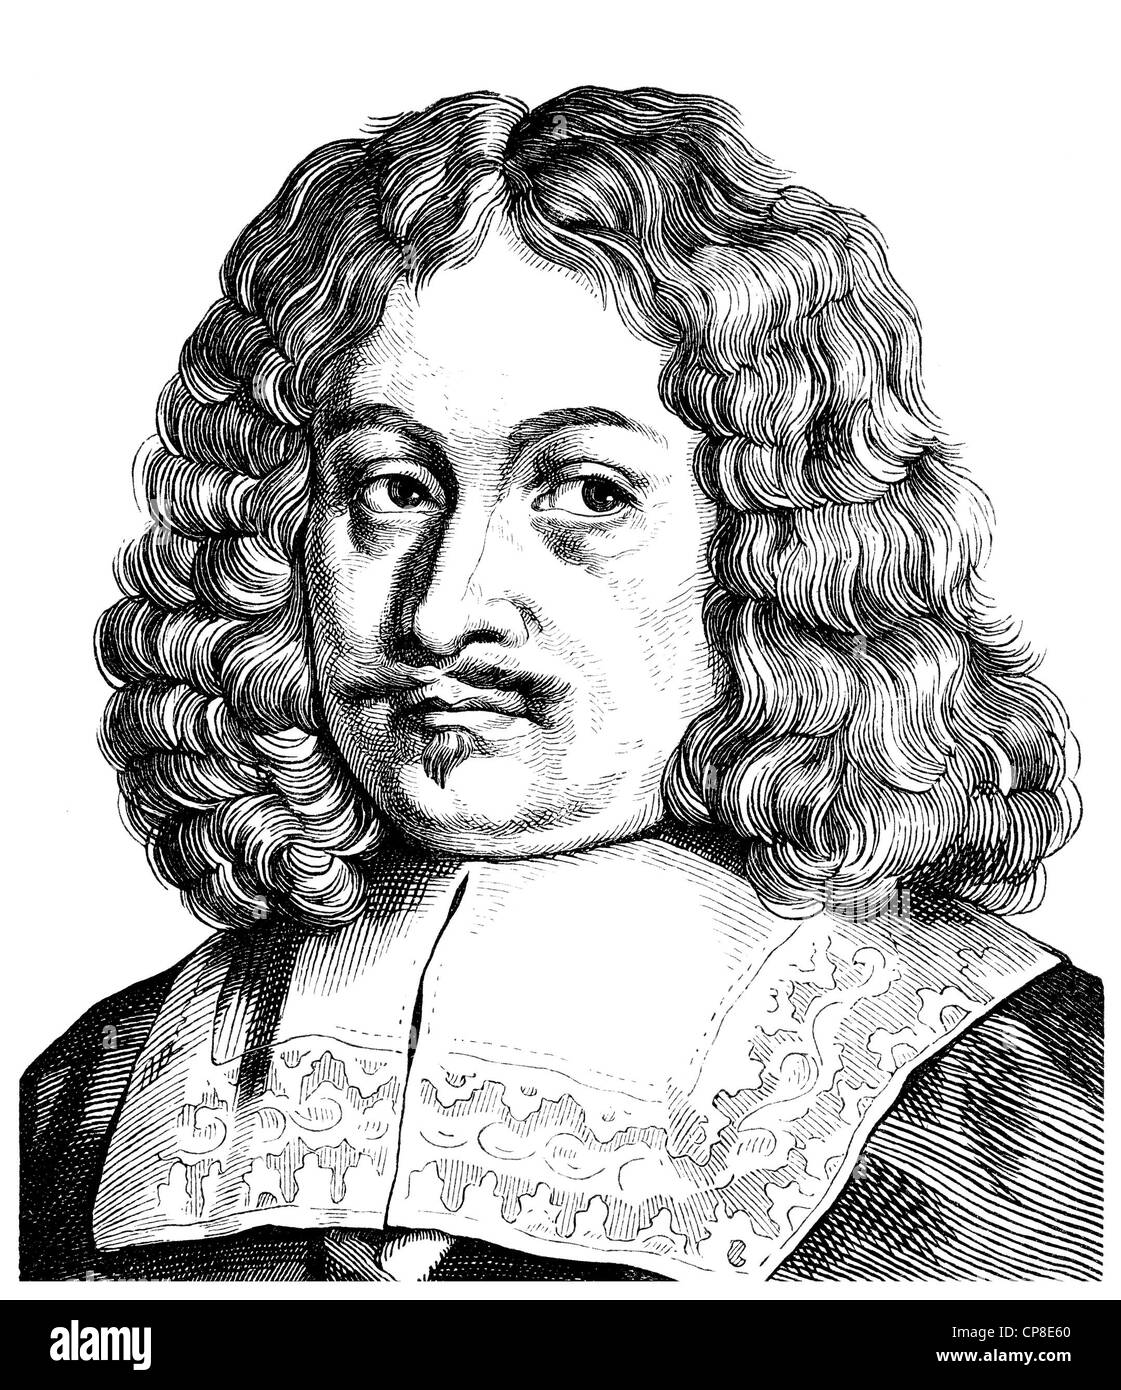 Andreas Gryphius ou Greif, 1616 - 1664, un poète et dramaturge allemand de l'époque baroque, auteur de sonnets, 17e siècle, Historische Banque D'Images